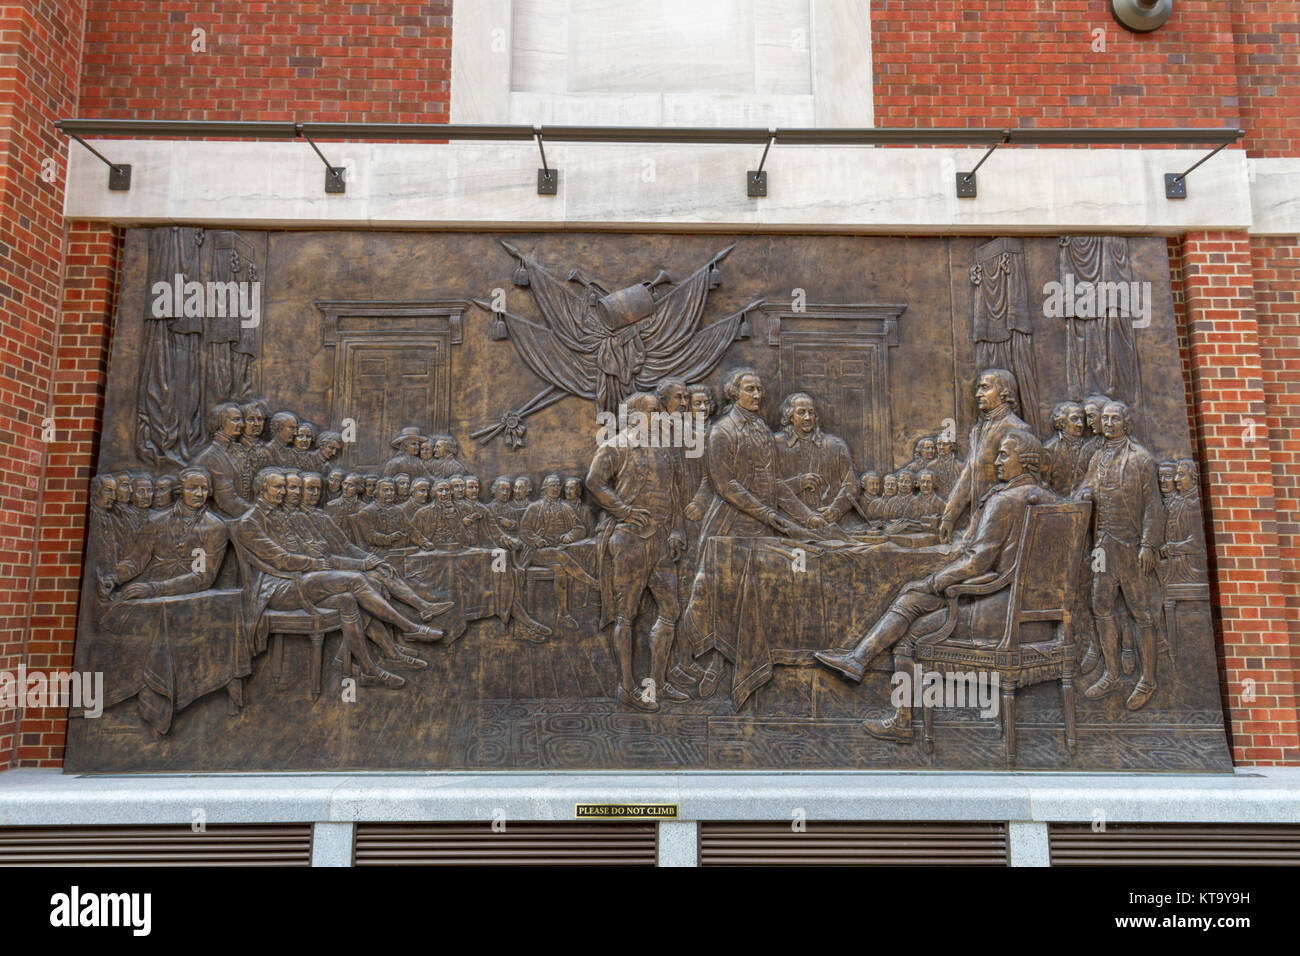 Panneau mural en bronze de la Déclaration d'indépendance peinture de John Trumbull, Musée de la Révolution américaine, Philadelphie, PA, United States. Banque D'Images